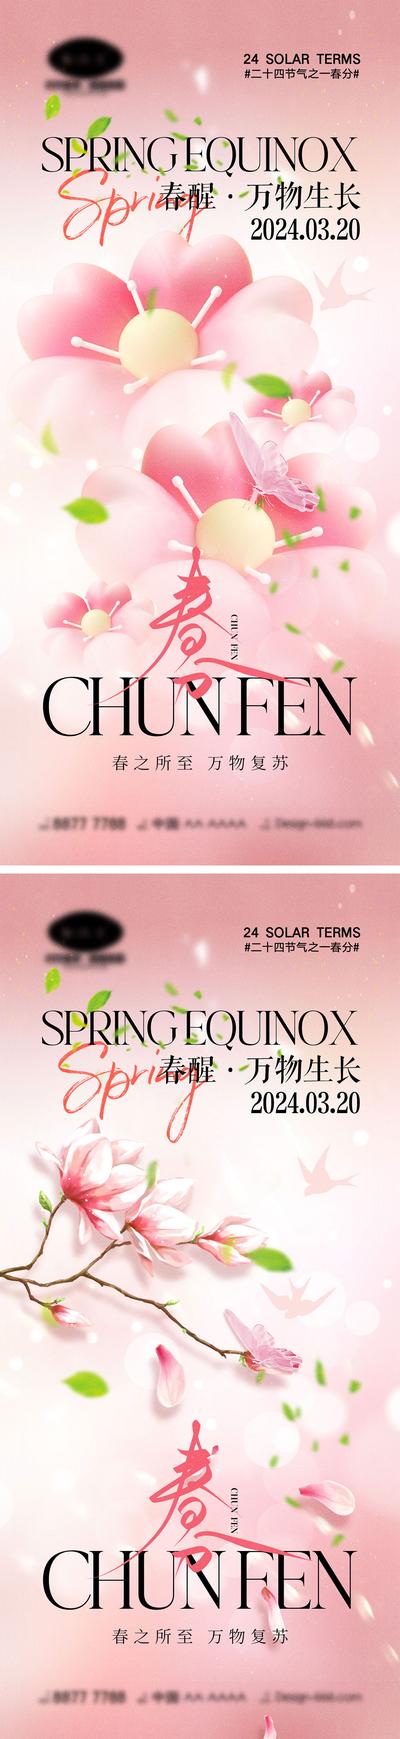 南门网 广告 海报 二十四节气 春分 清明 谷雨 虫子 春天 花朵 燕子 昆虫